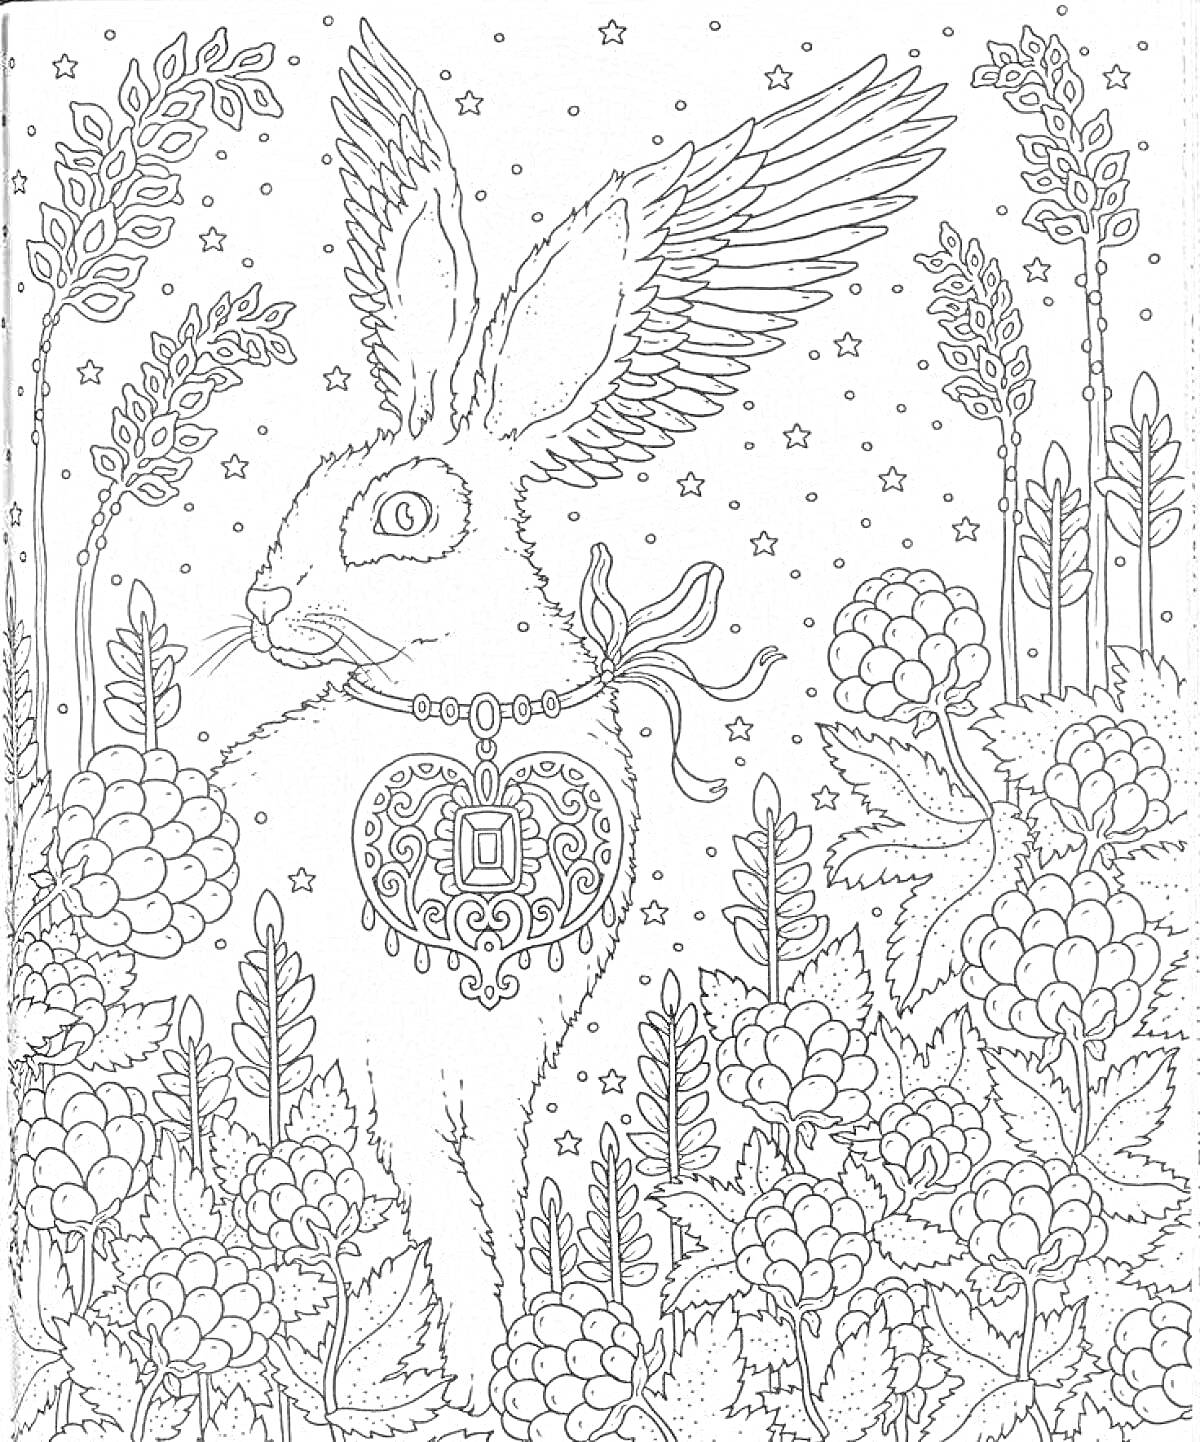 Раскраска Крылатый заяц с ожерельем в сердце, сидящий среди малины и колосьев, ночью под звездами